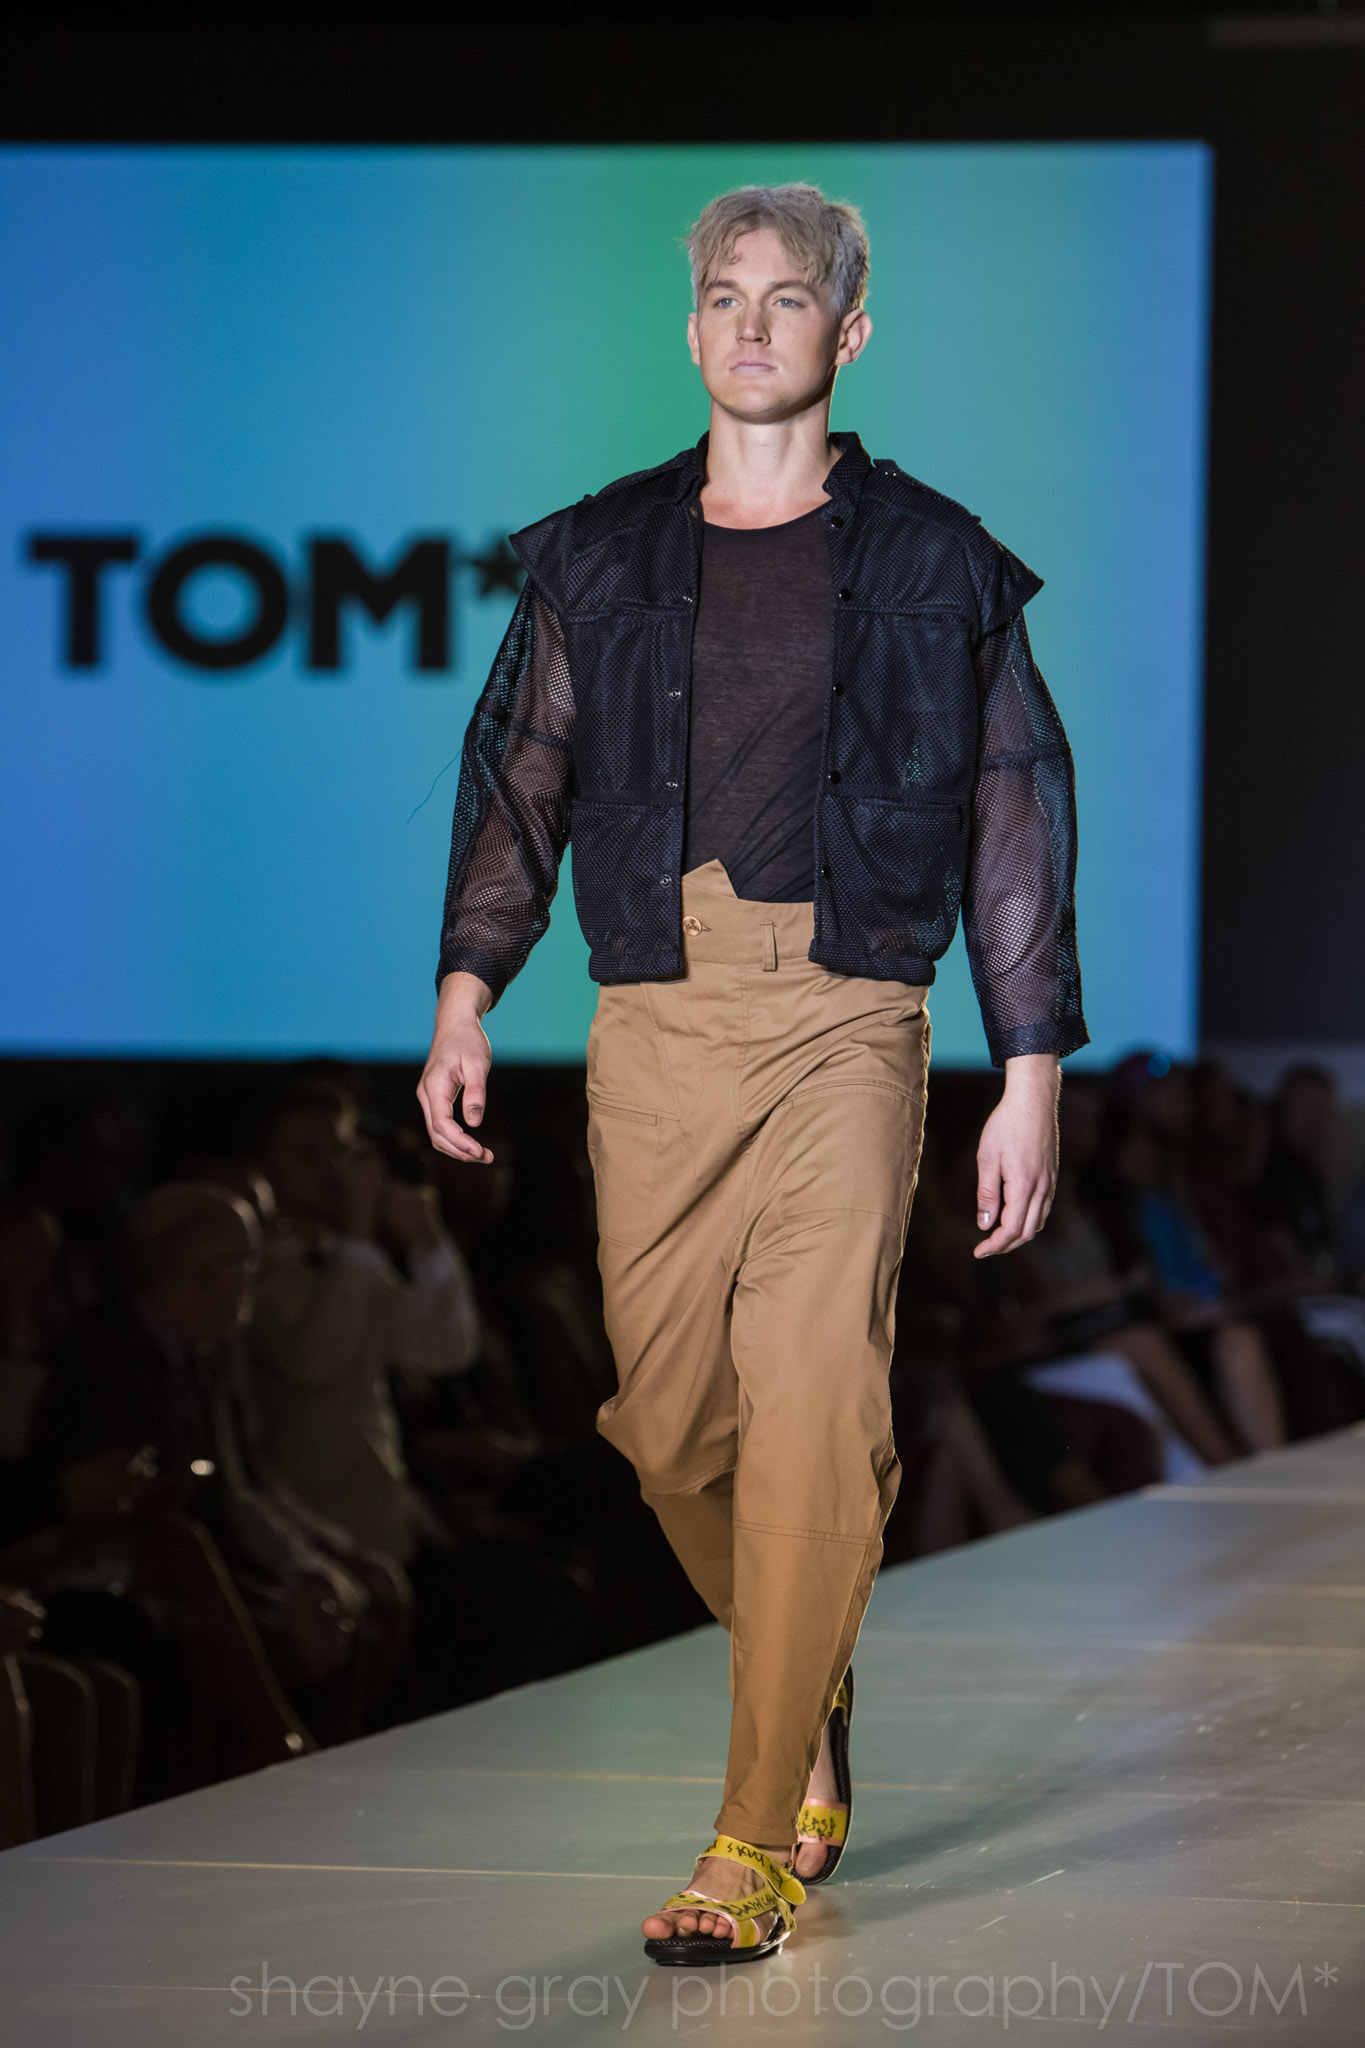 Shayne-Gray-Toronto-men's-fashion_week-TOM-jose-duran-7774.jpg